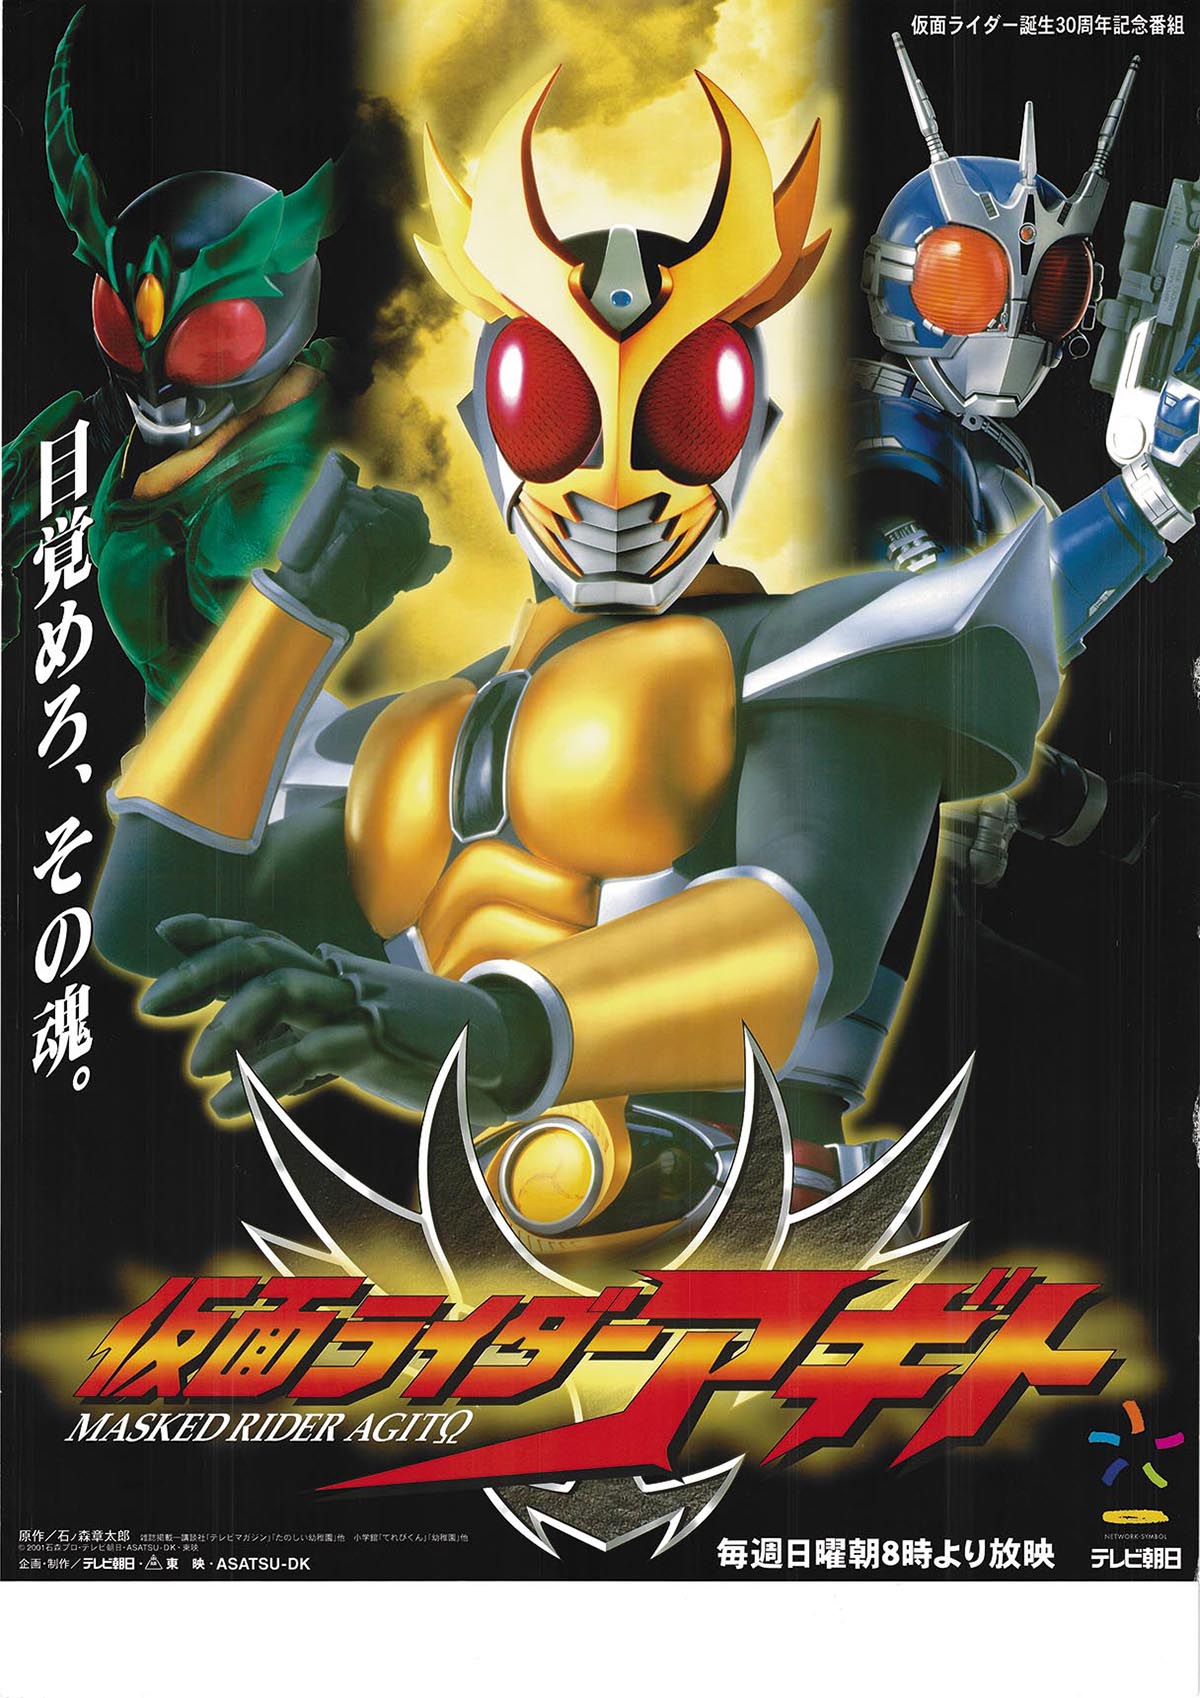 Kamen Rider Agito Cho Zenshu Book #2 Tokusatsu Masked Rider Photo Art